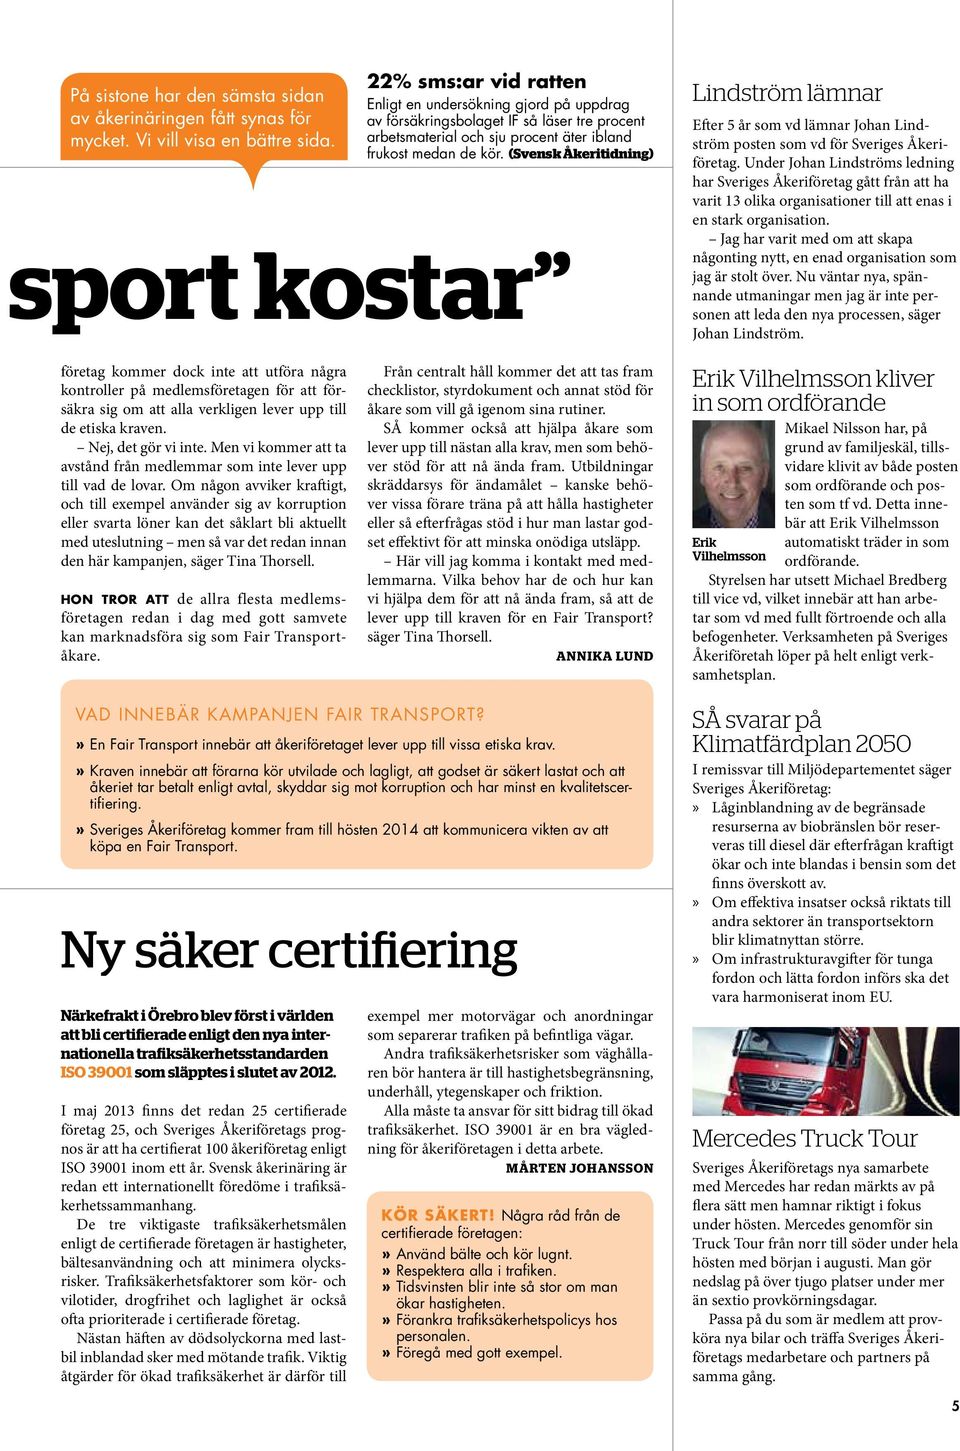 (Svensk Åkeritidning) sport kostar Lindström lämnar Efter 5 år som vd lämnar Johan Lindström posten som vd för Sveriges Åkeriföretag.